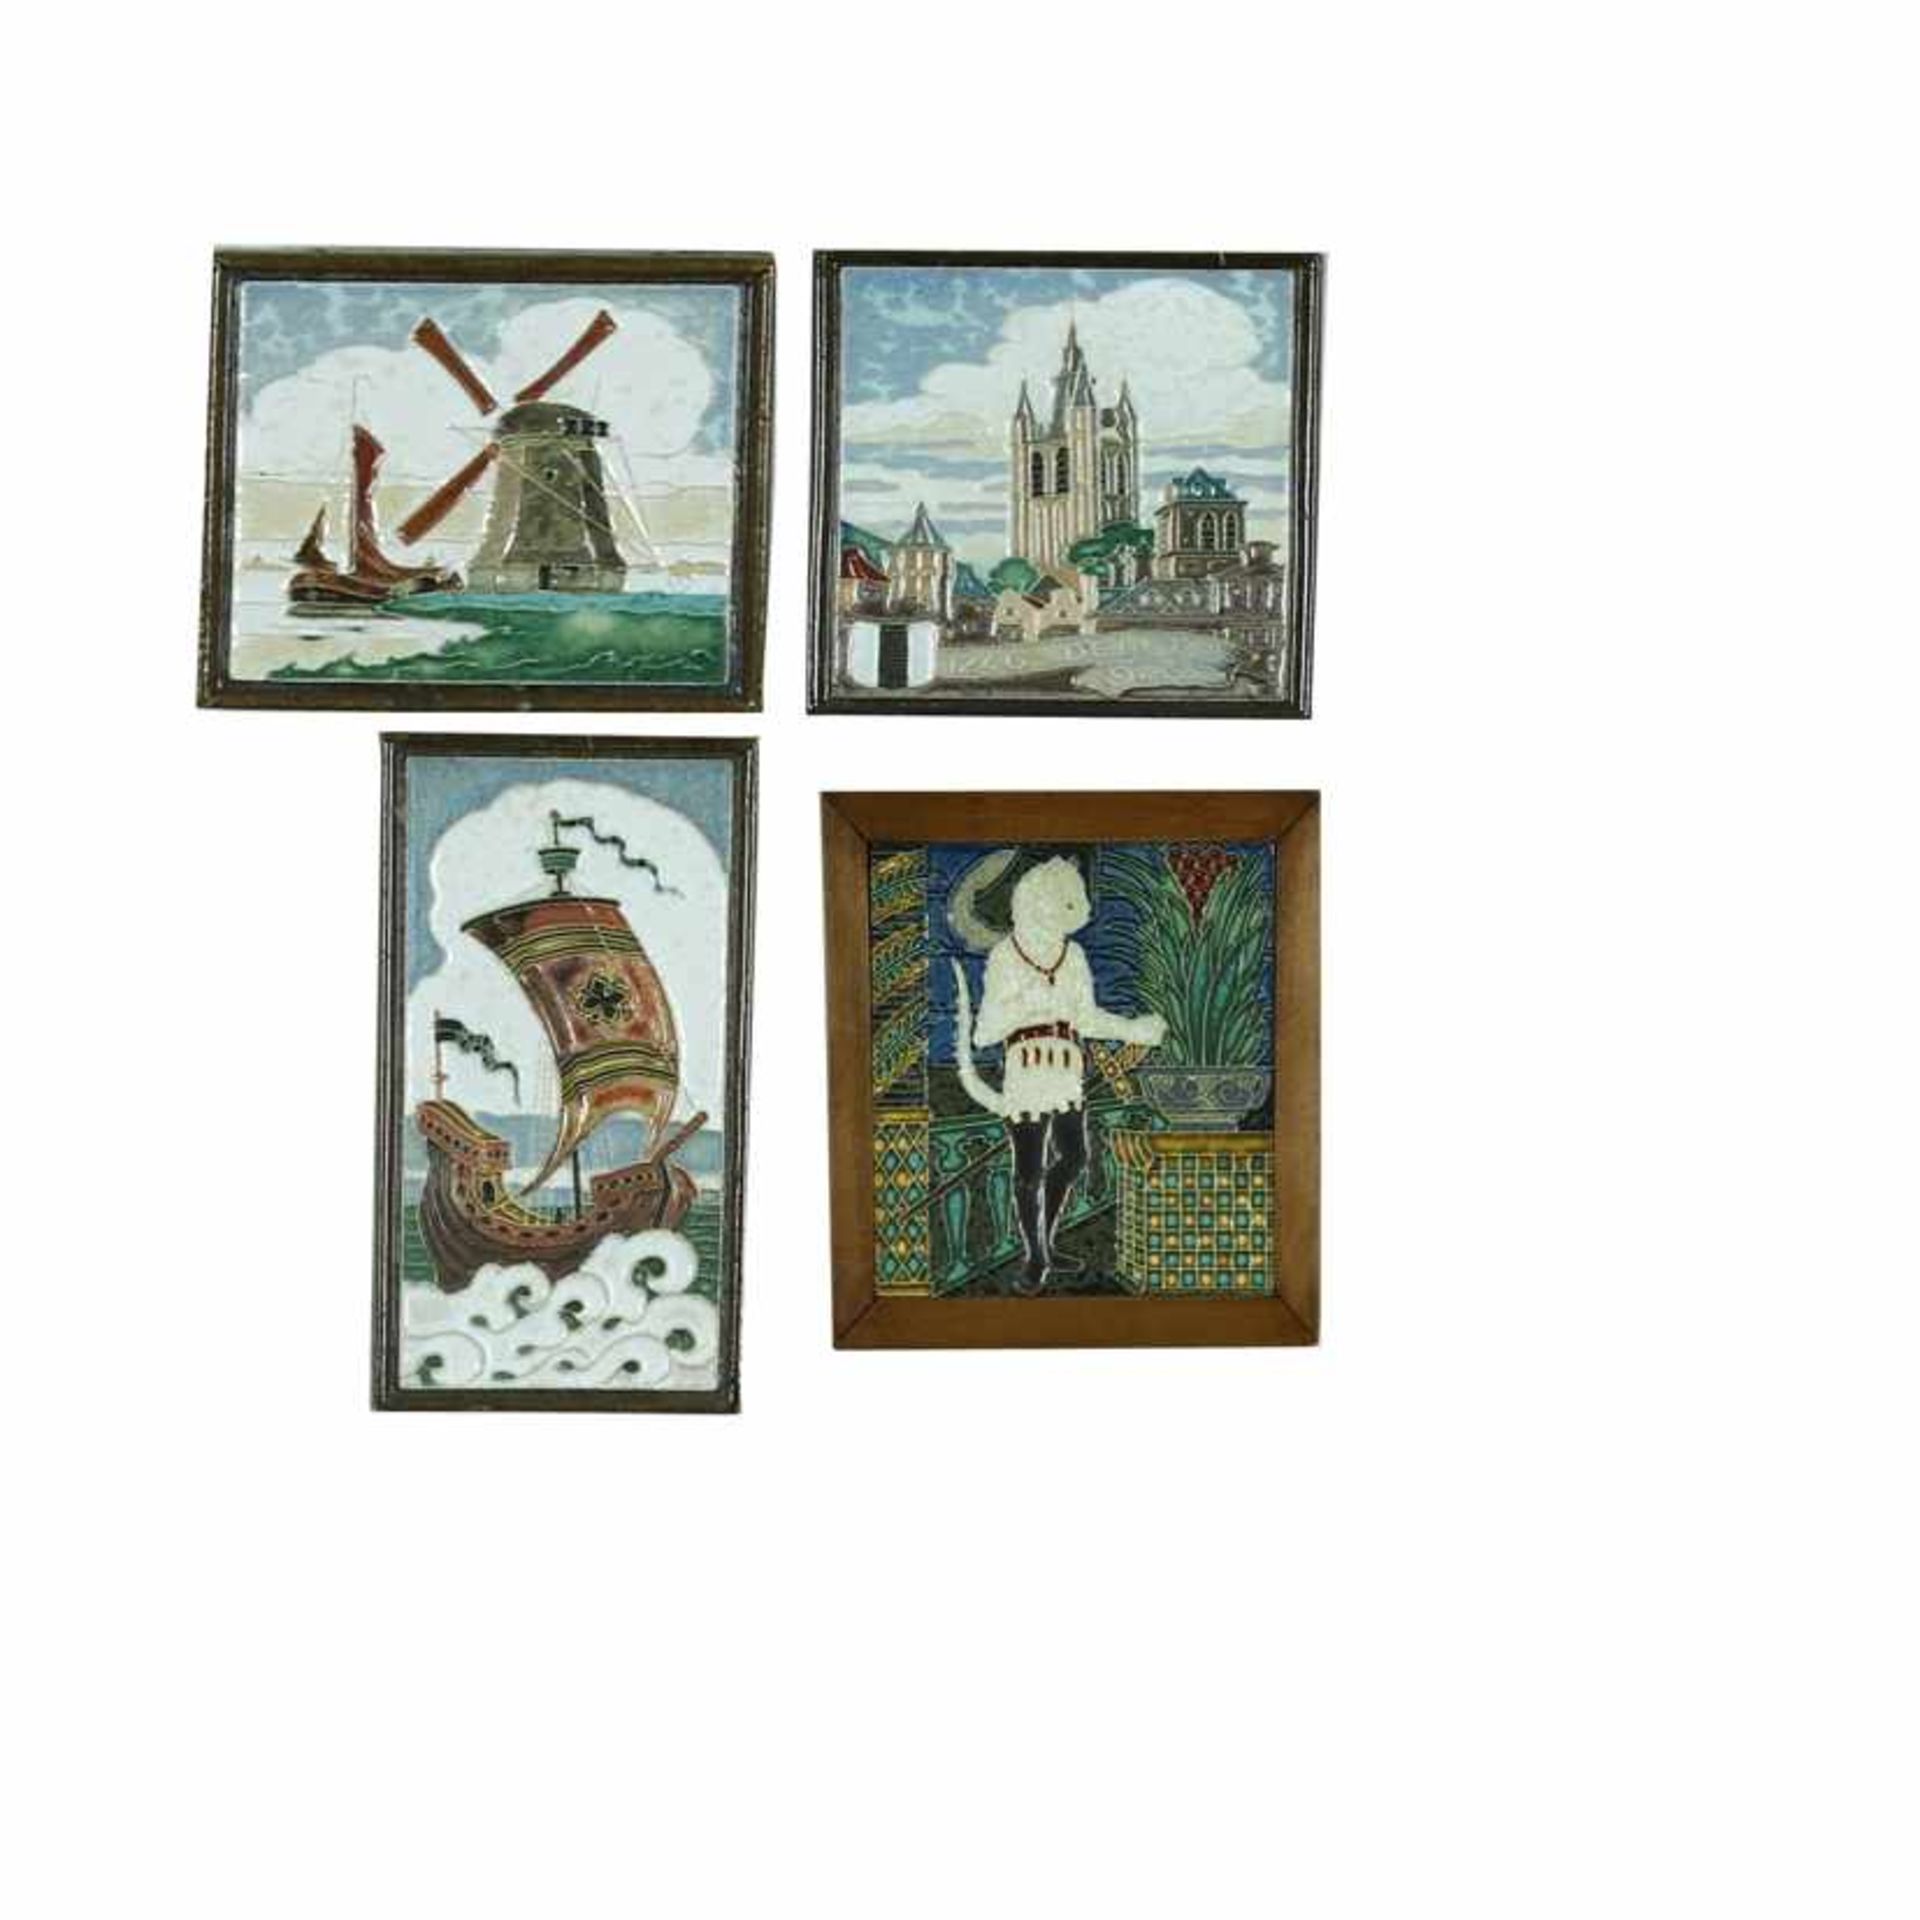 Drie aardewerk cloisonné wandtegels: zeilschip -defecten-22,8 x 12,3, 1246-Delft-1946 en molen aan